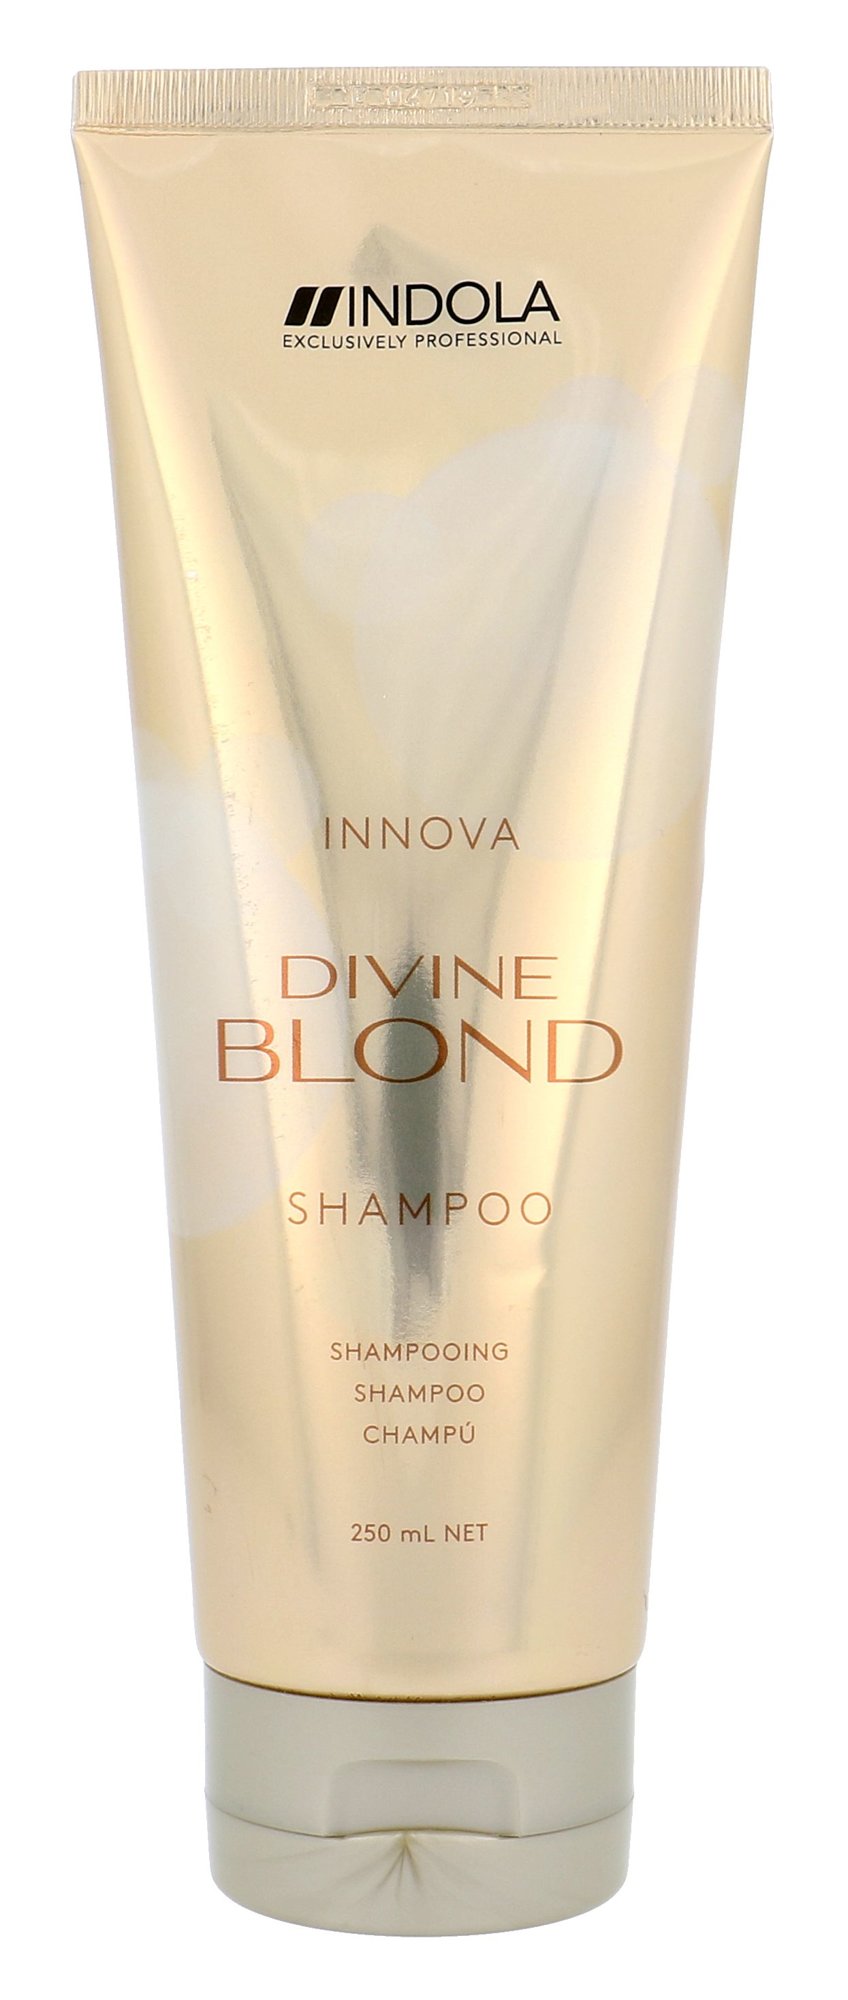 Indola Innova Divine Blond 250ml šampūnas